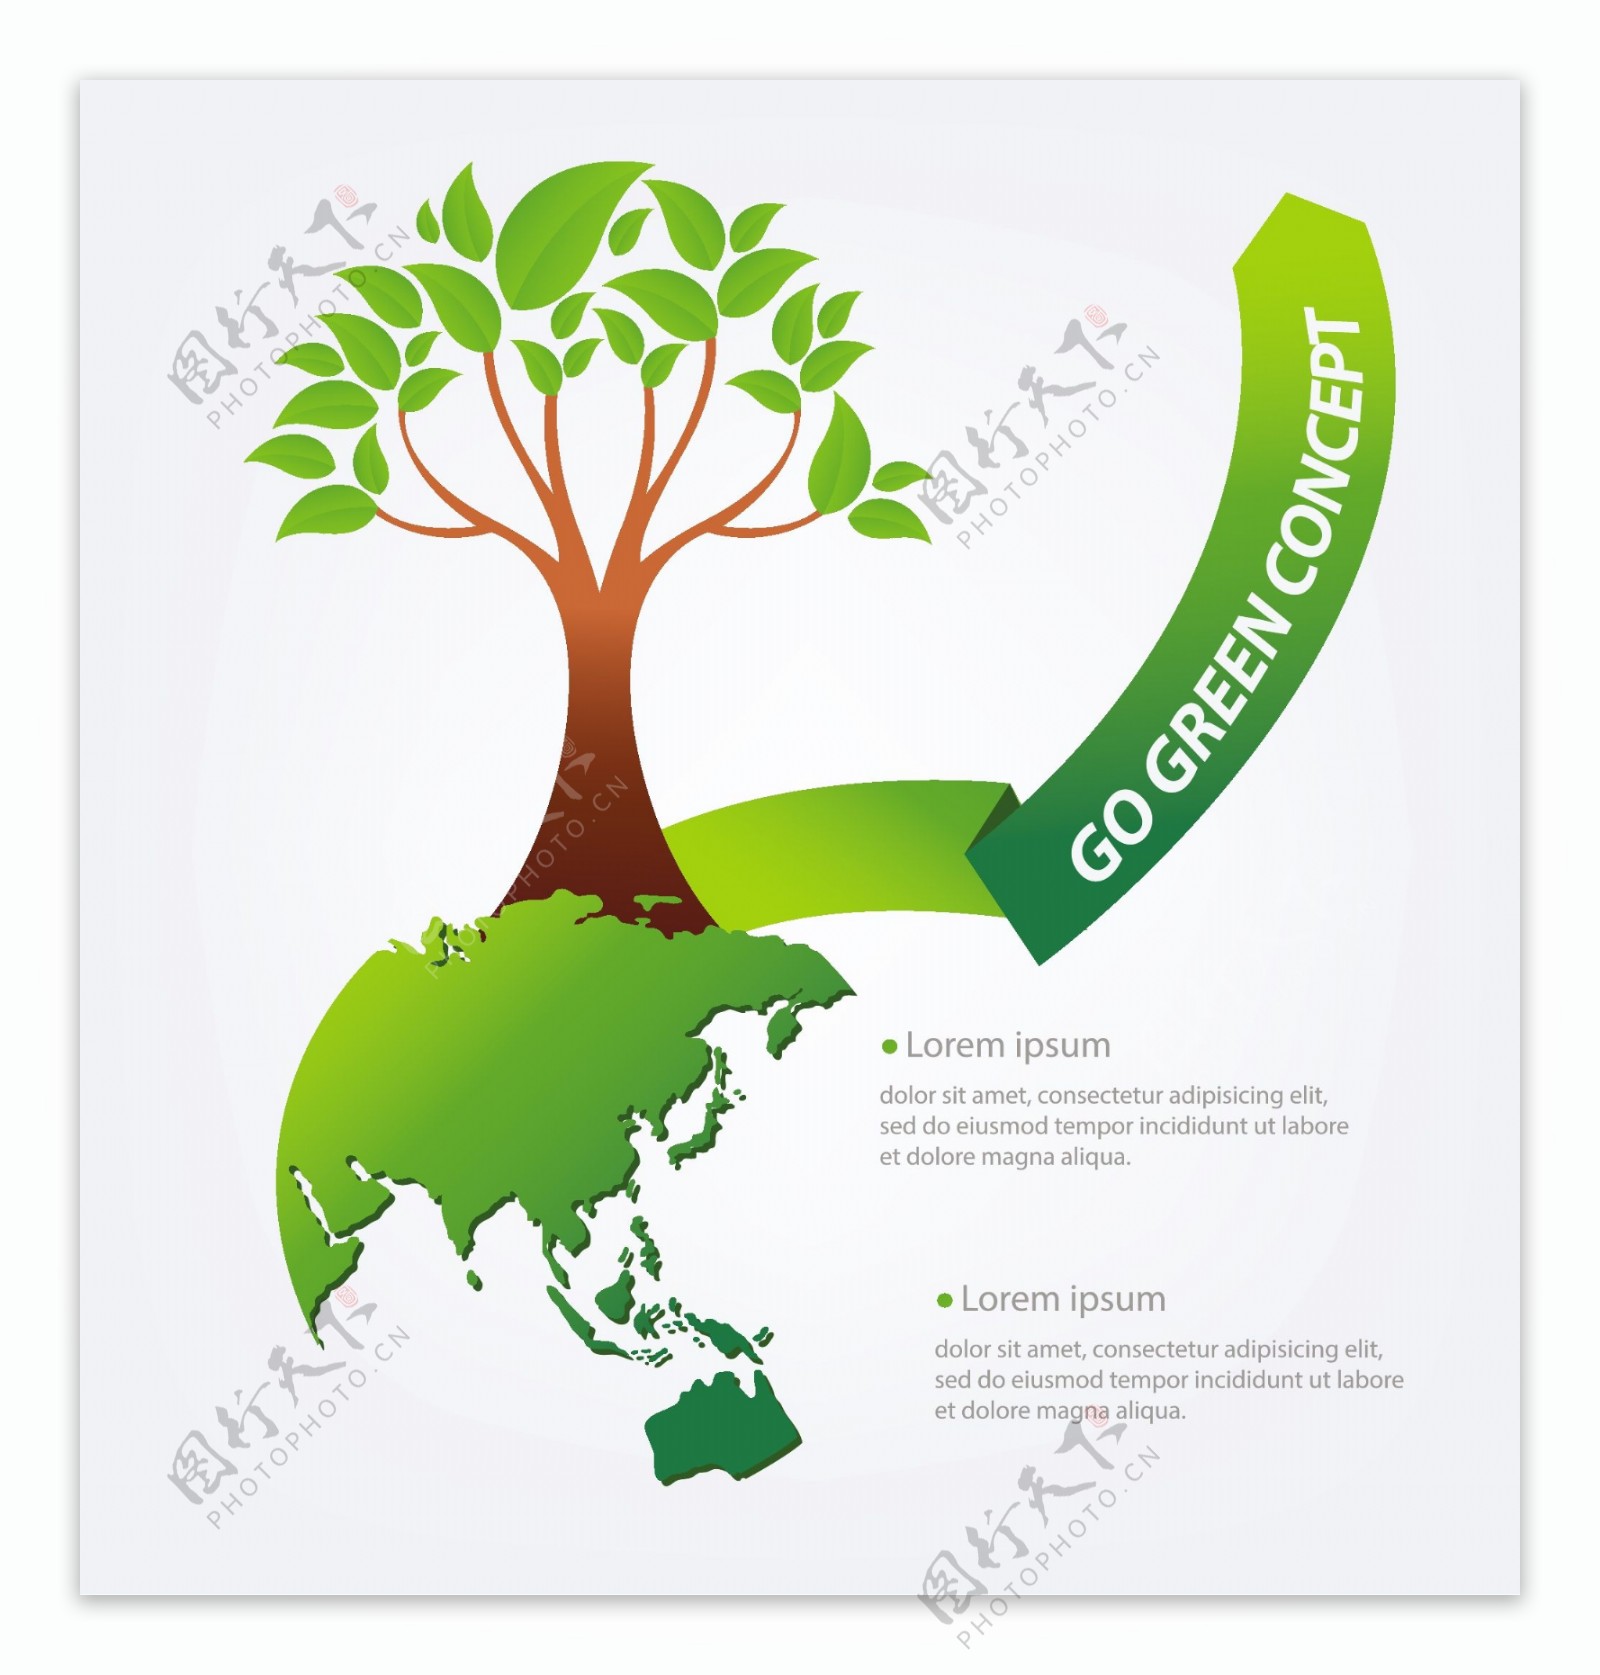 环保保护环境eco节图片